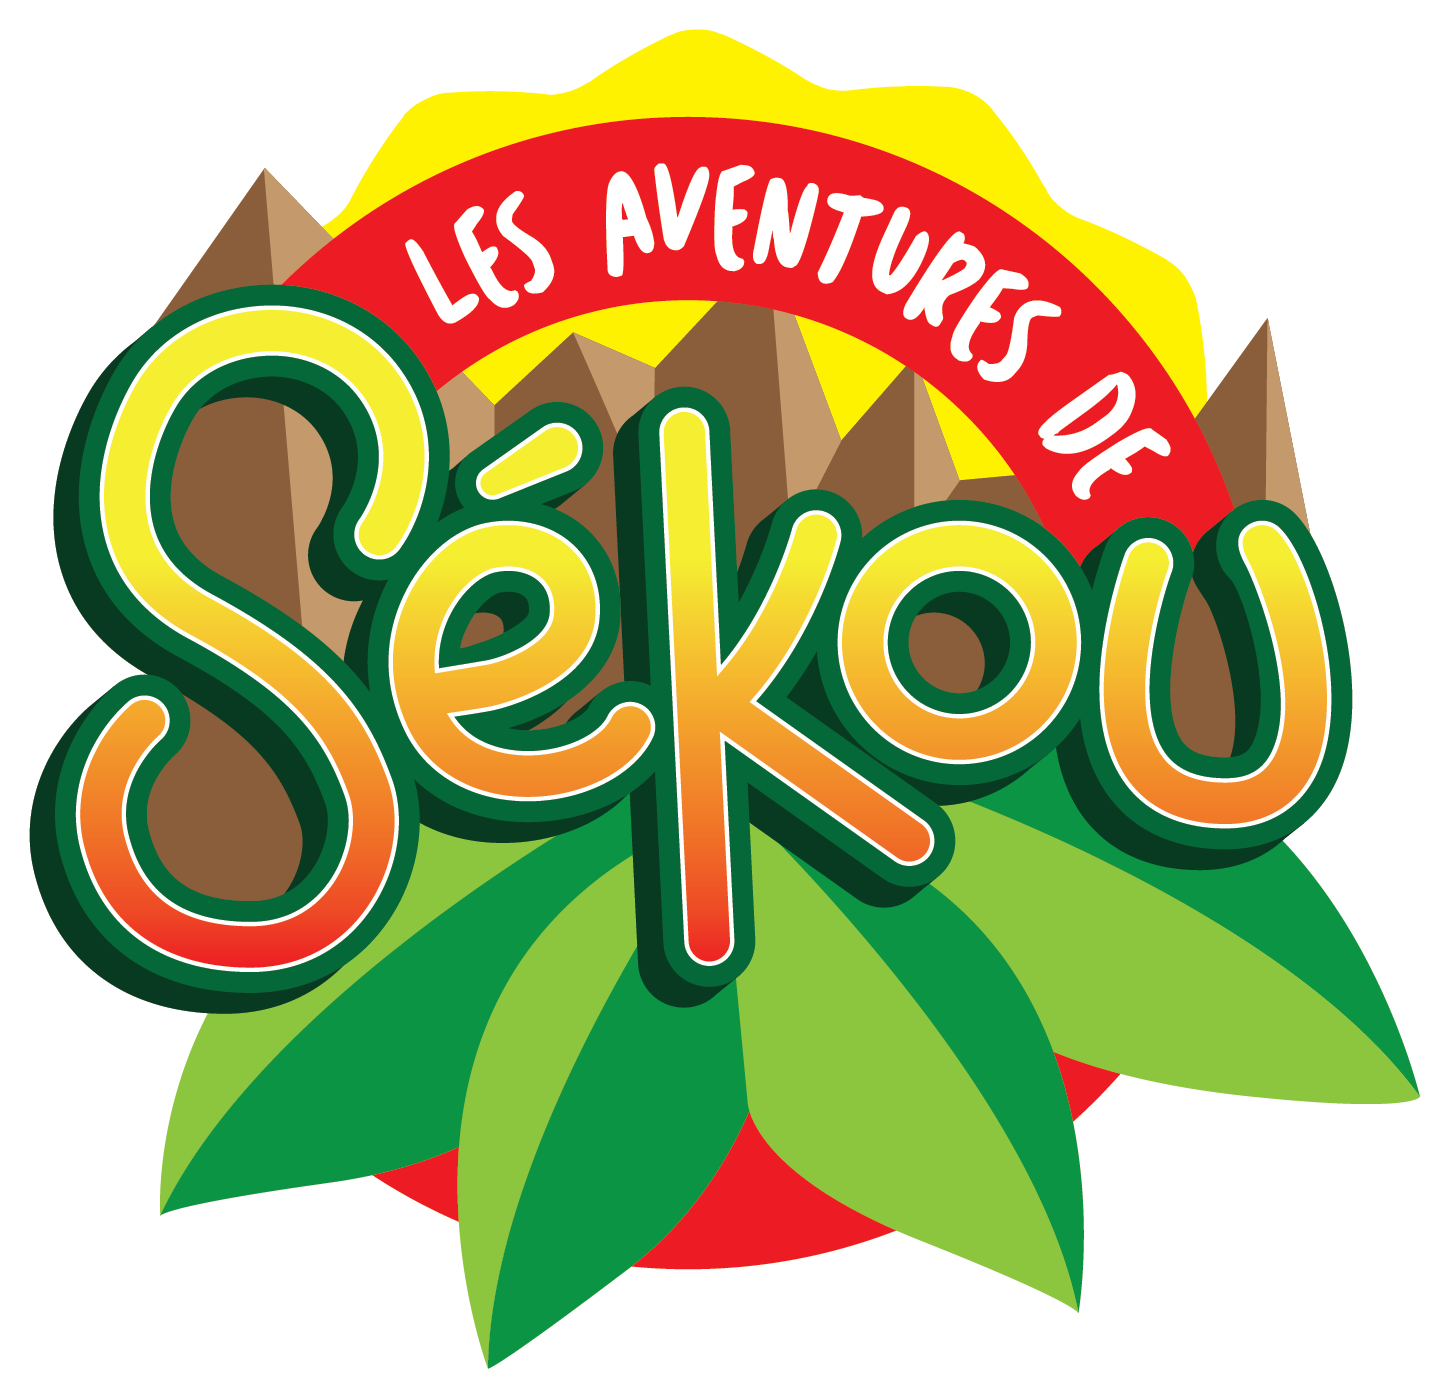 Hi Sekou